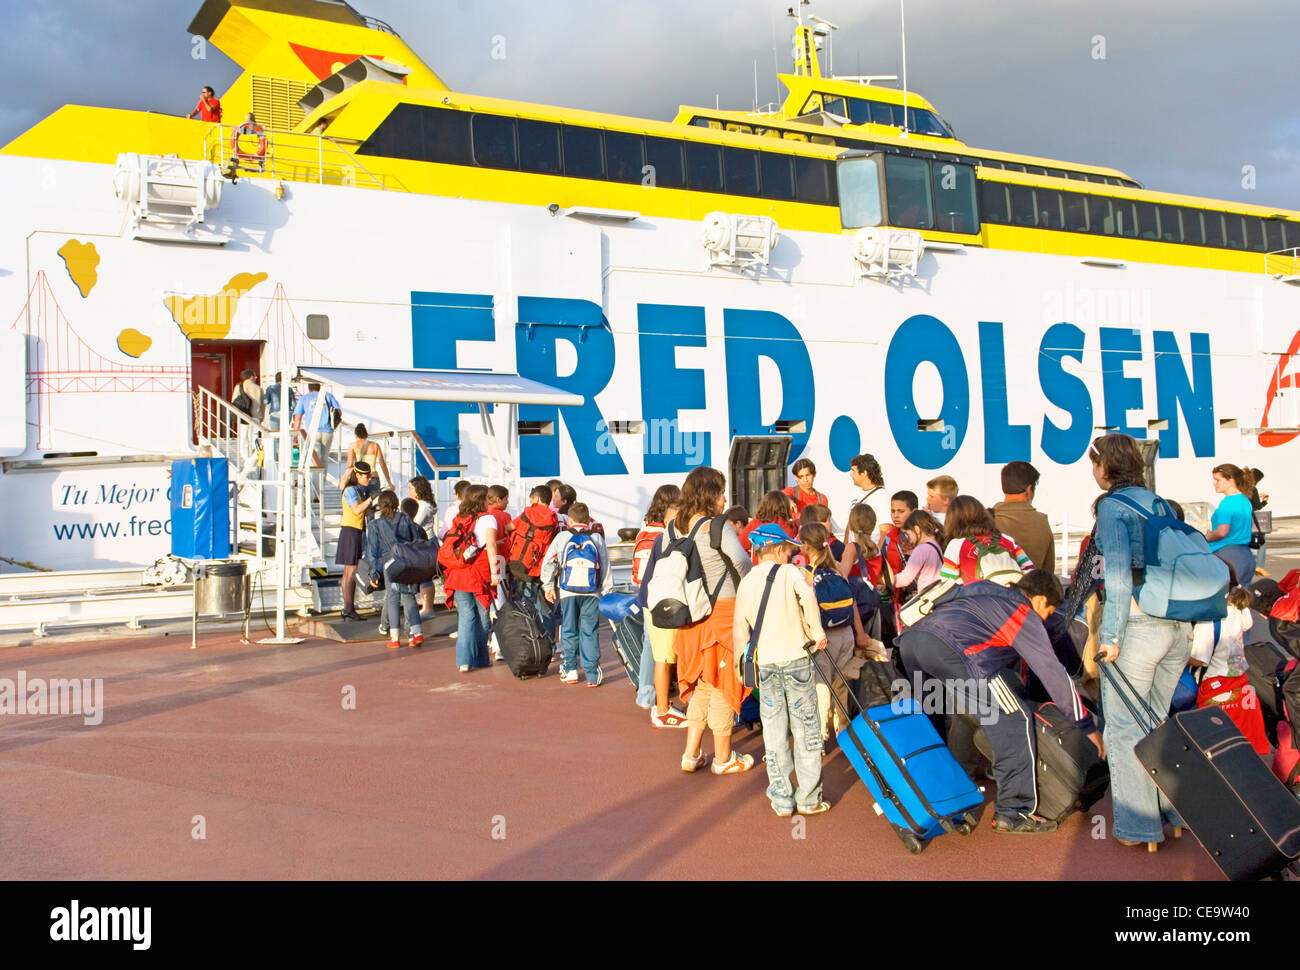 Les passagers d'Fred Olsen line ferry Benchijigua Express dans le port de Los Cristianos, Tenerife, Îles Canaries Banque D'Images